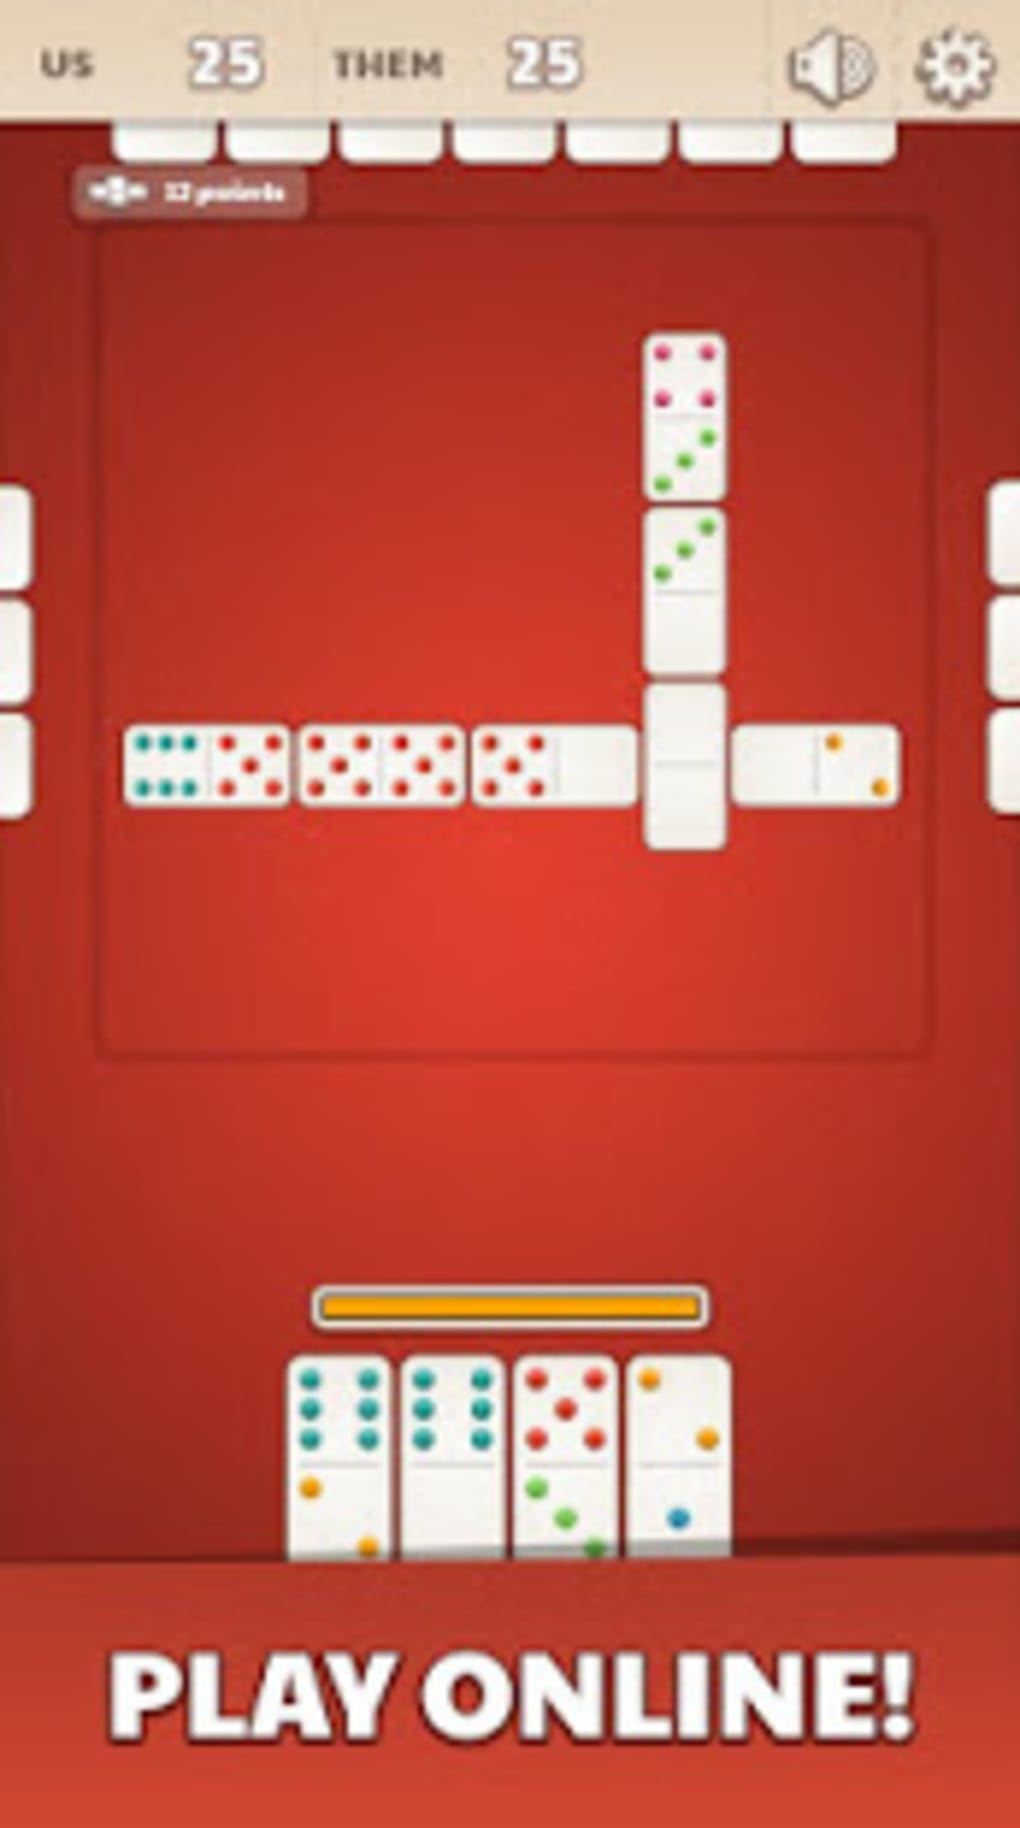 Domino Jogatina: Juego Online - Aplicaciones en Google Play